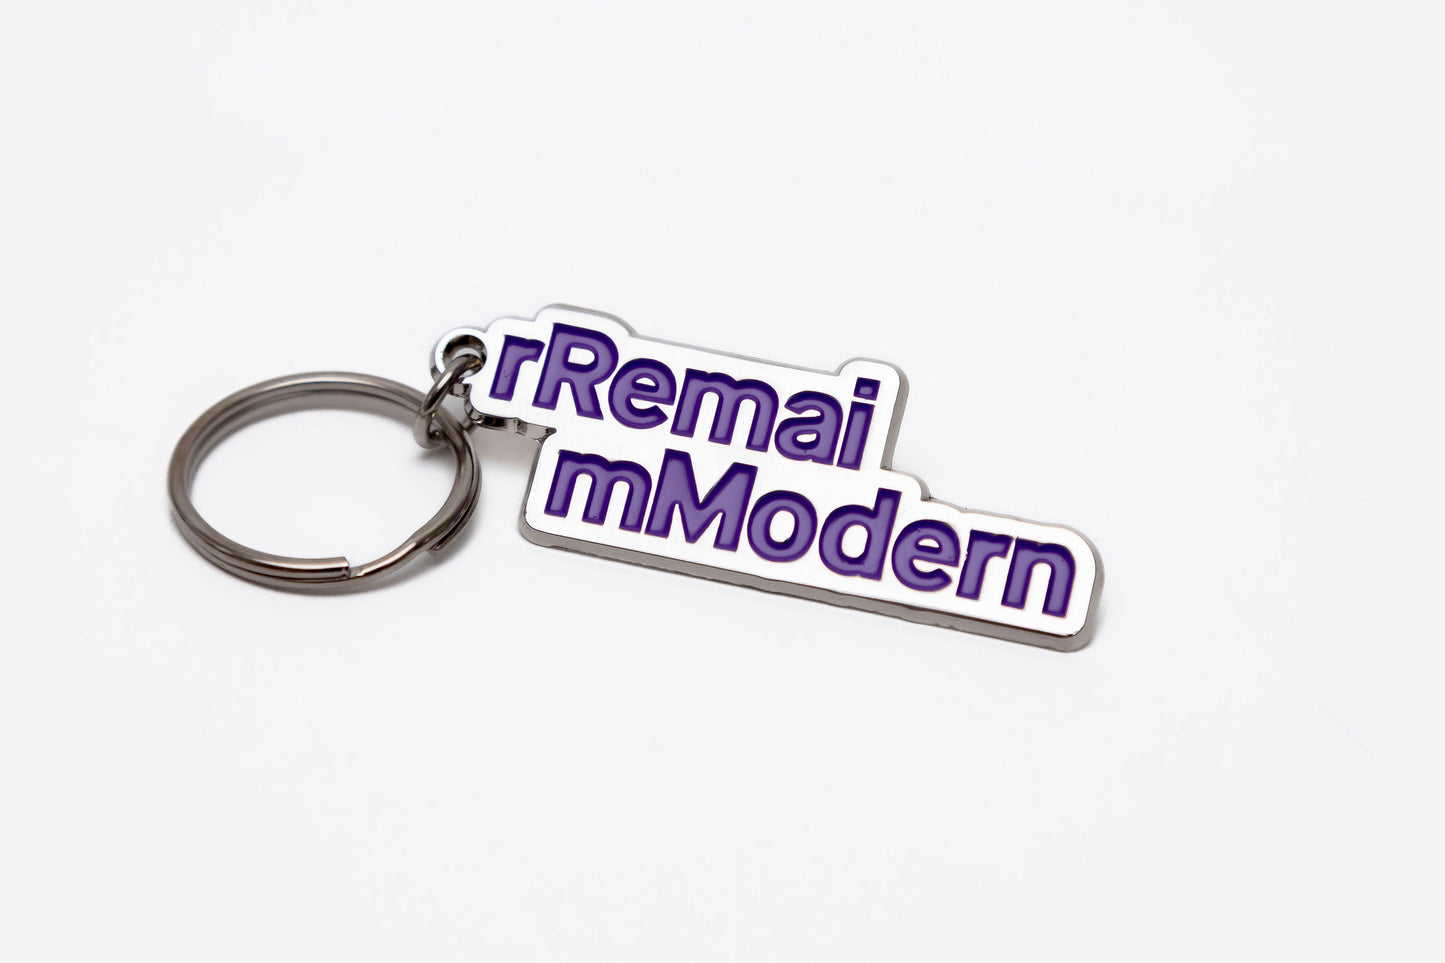 Remai Modern Keychain